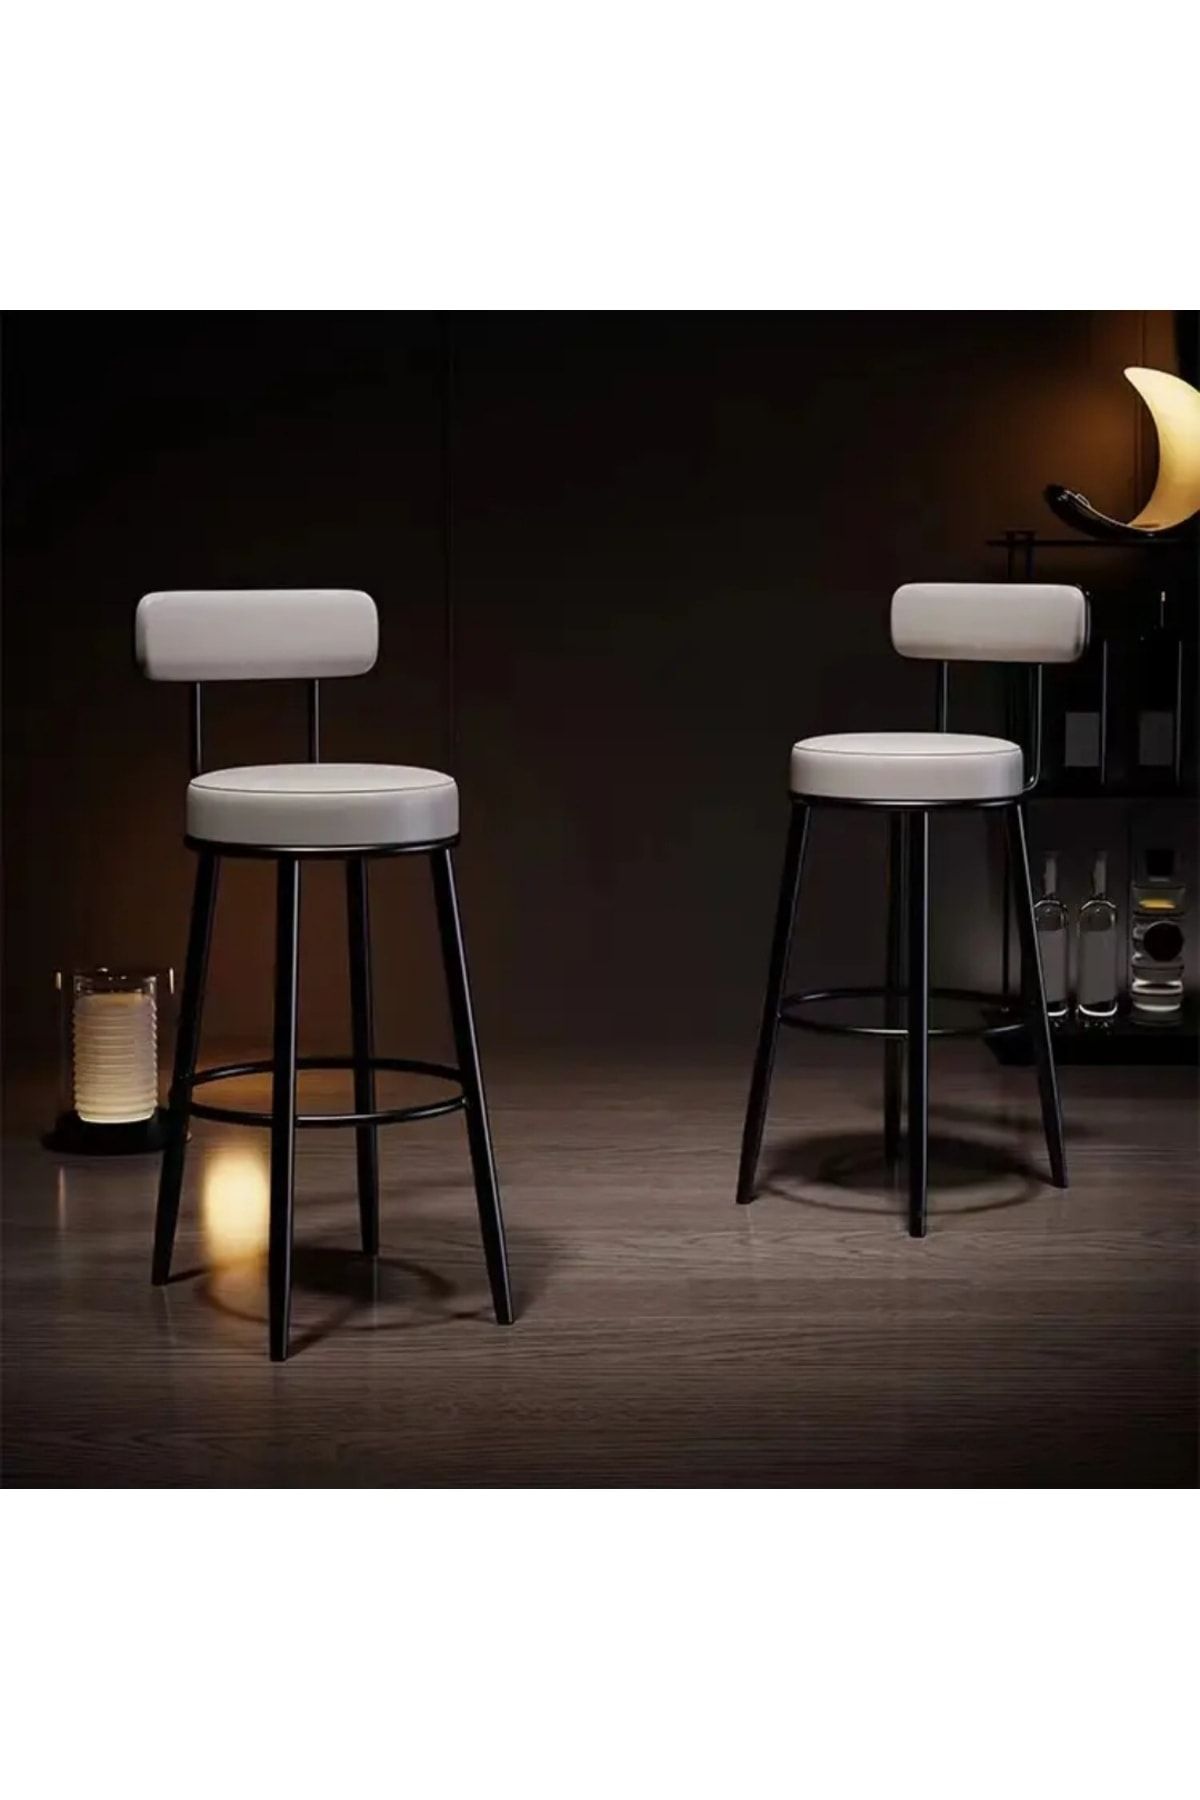 J&S QUALİTY Montajgerektirmez Hazır Kirli Beyaz Renk Bar Sandalyesi Ikea Tasarımı 75 Cm Oturum Yüksekliği